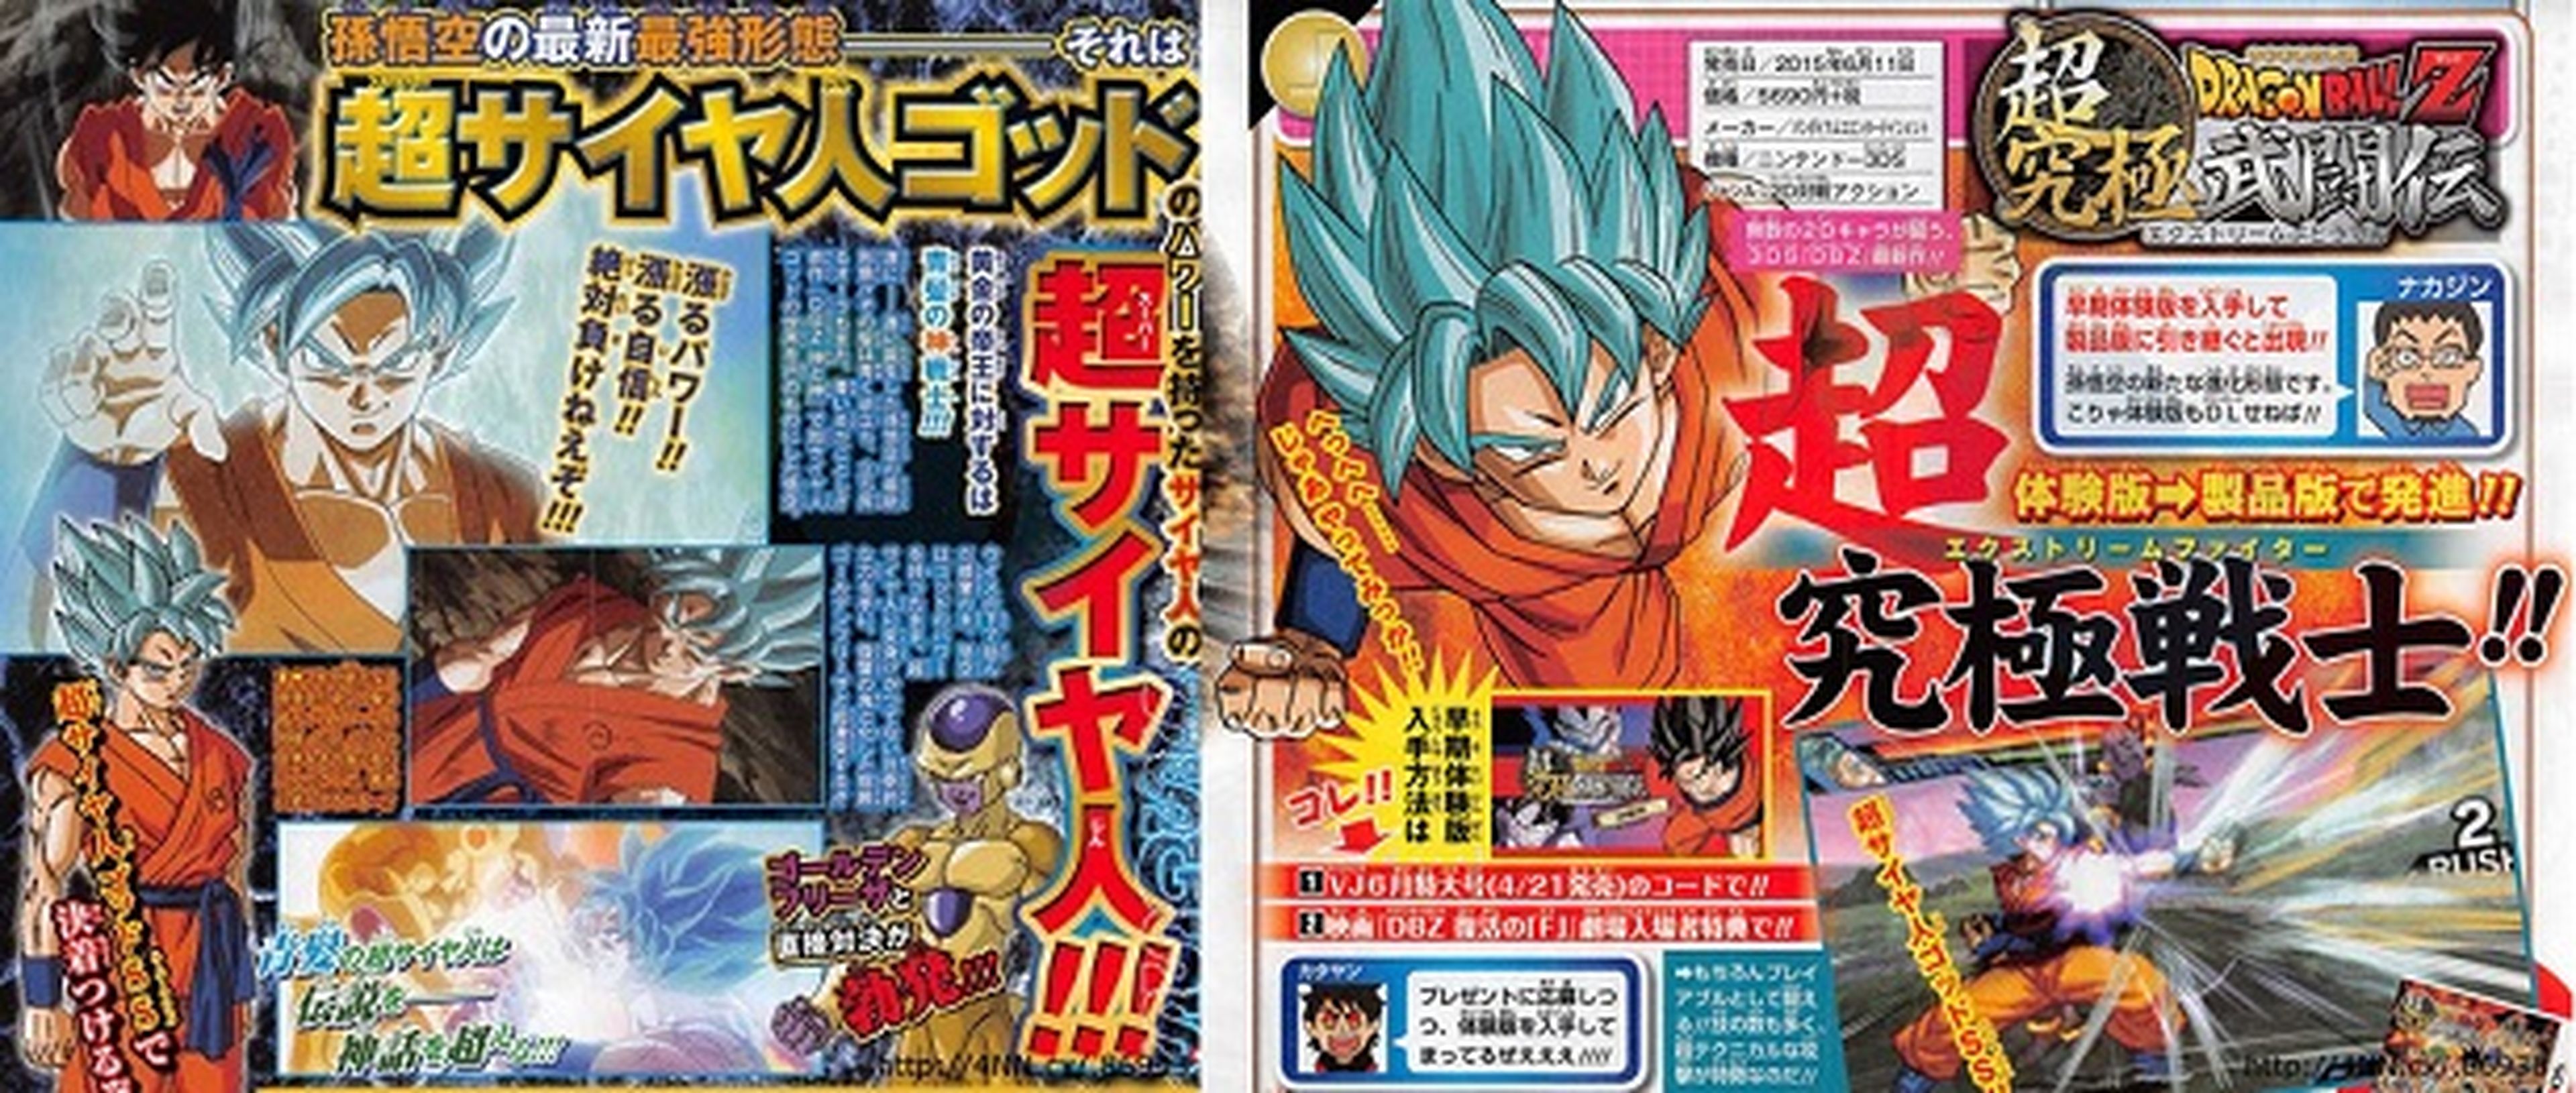 Dragon Ball Z: Fukkatsu no F: imágenes de la nueva transformación de Goku